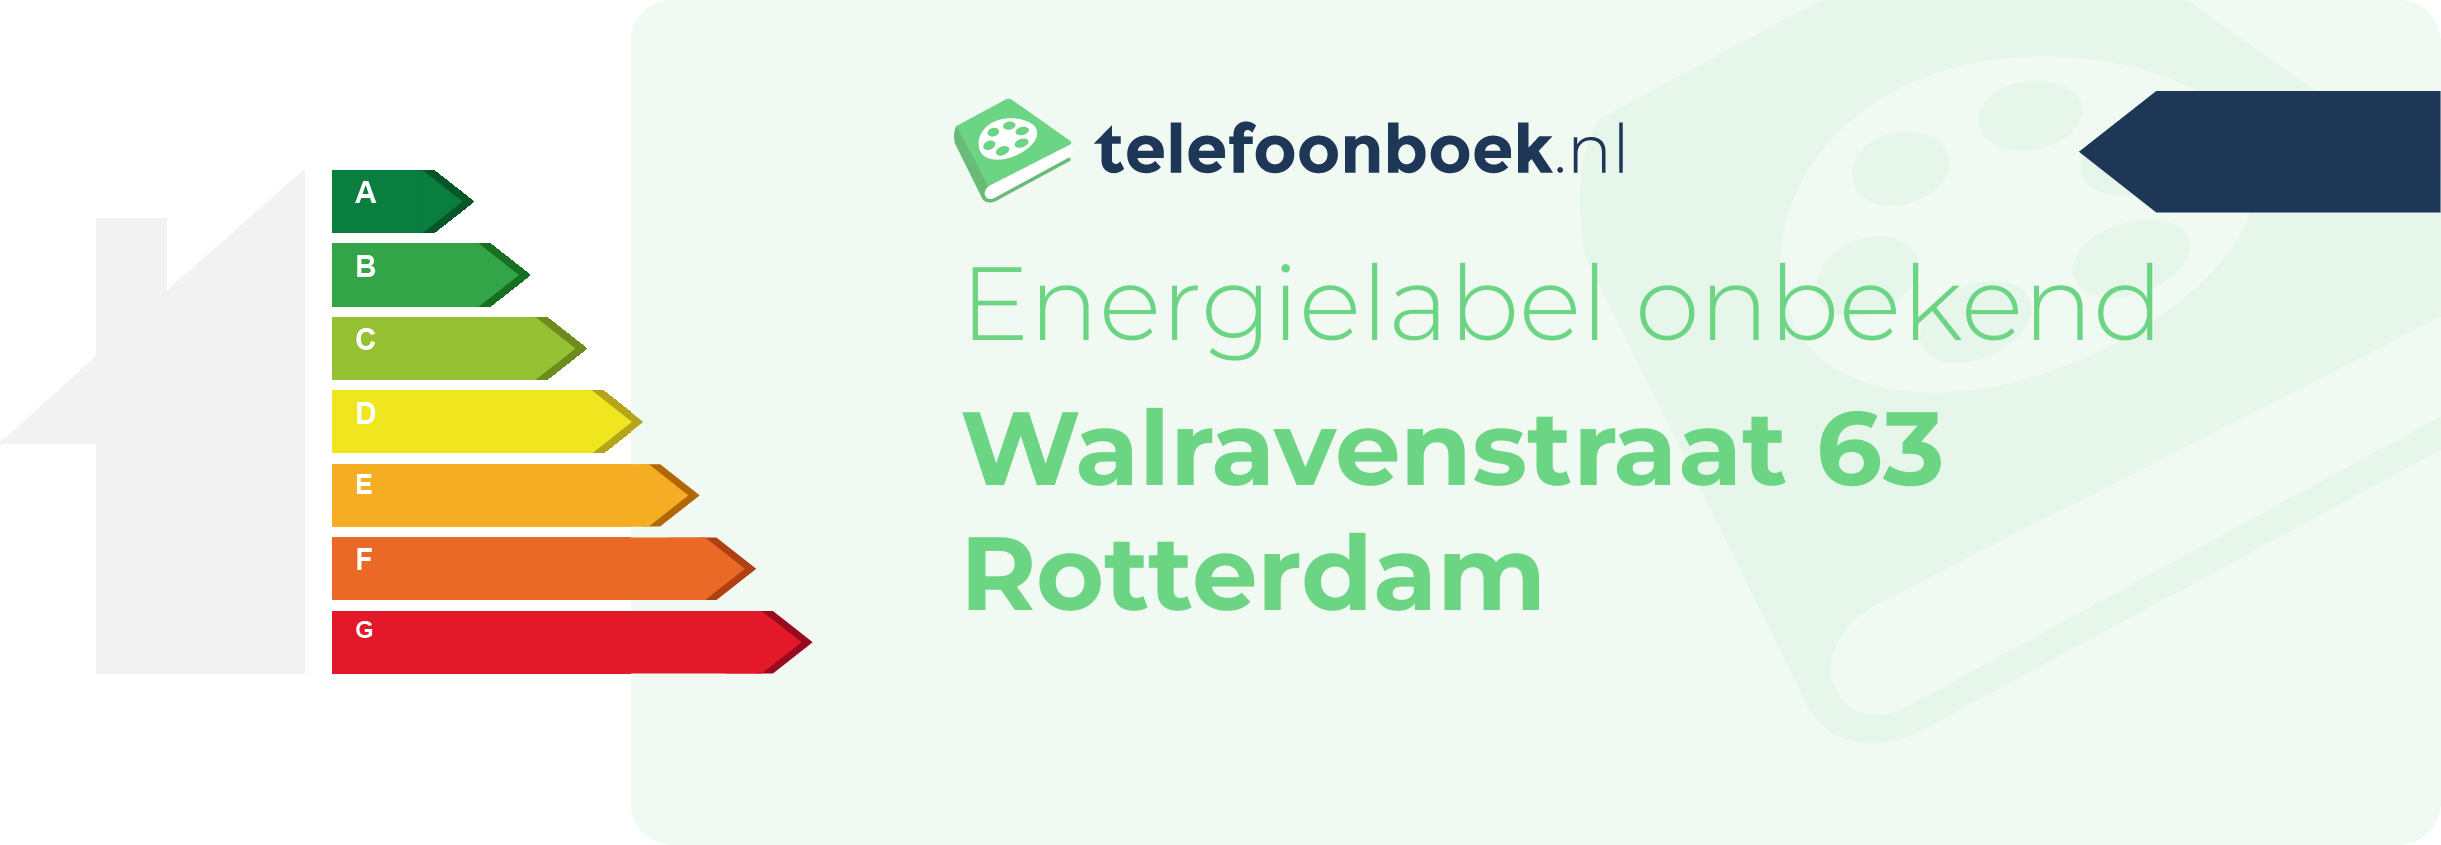 Energielabel Walravenstraat 63 Rotterdam